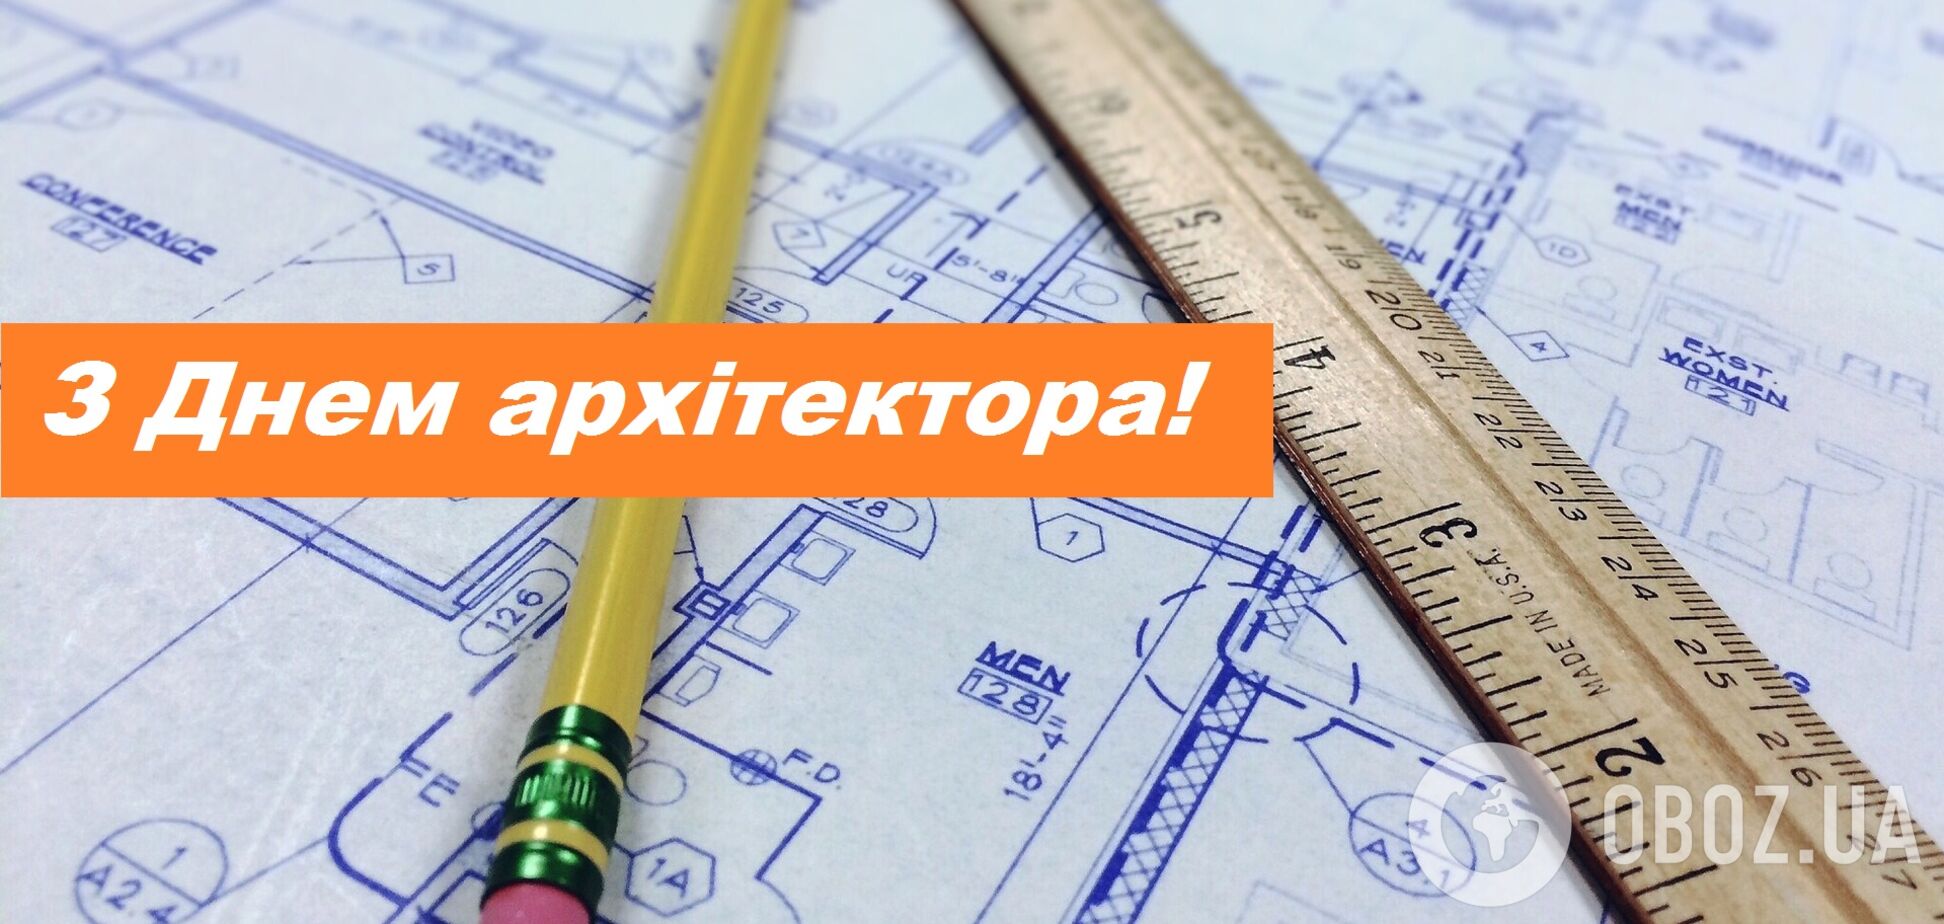 День архітектури України відзначається щорічно 1 липня